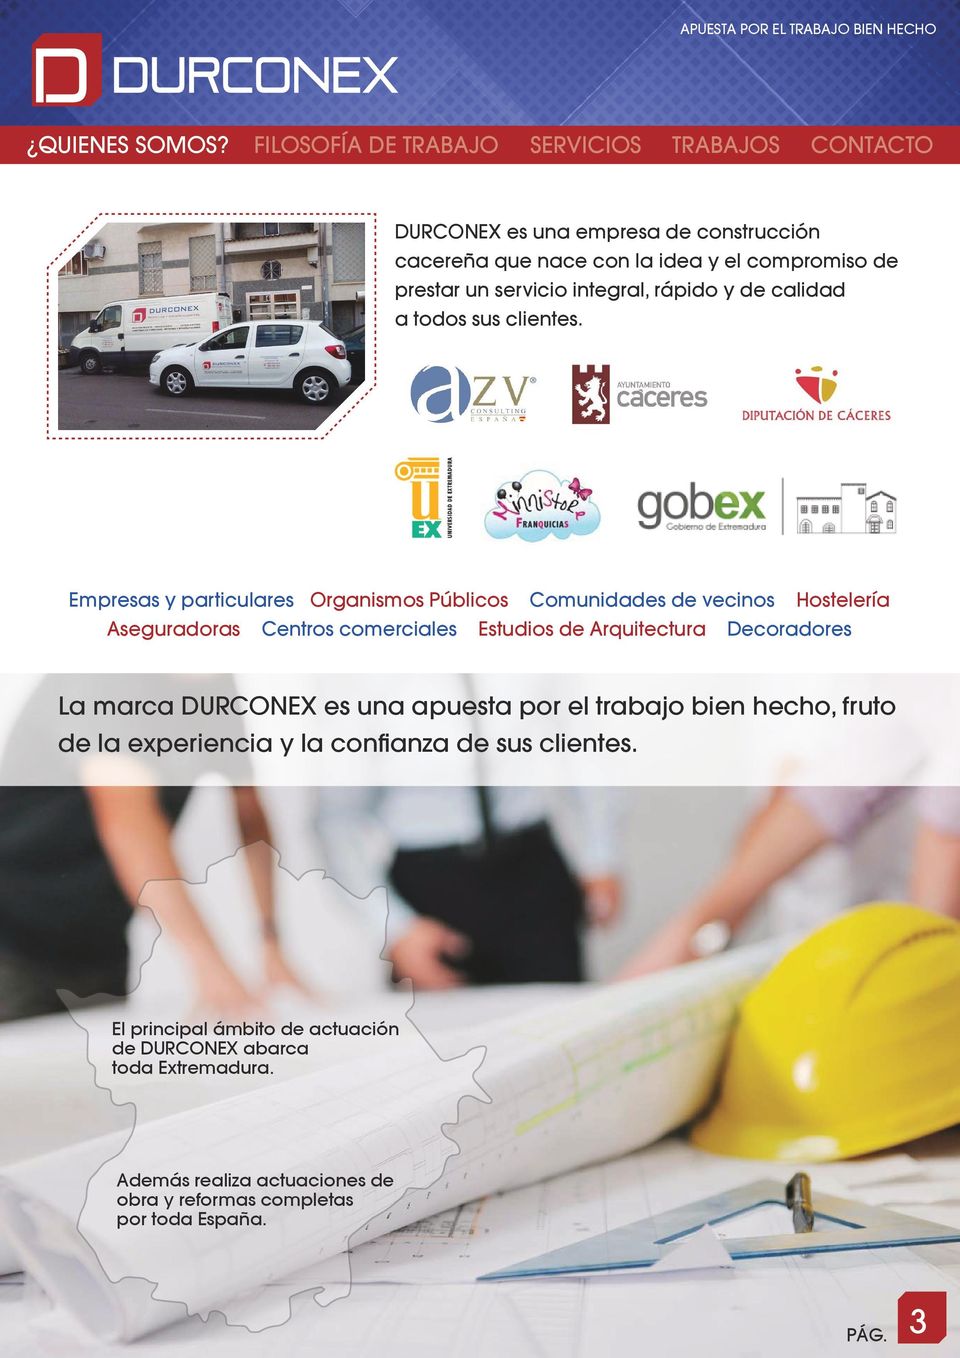 Empresas y particulares Organismos Públicos Comunidades de vecinos Hostelería Aseguradoras Centros comerciales Estudios de Arquitectura